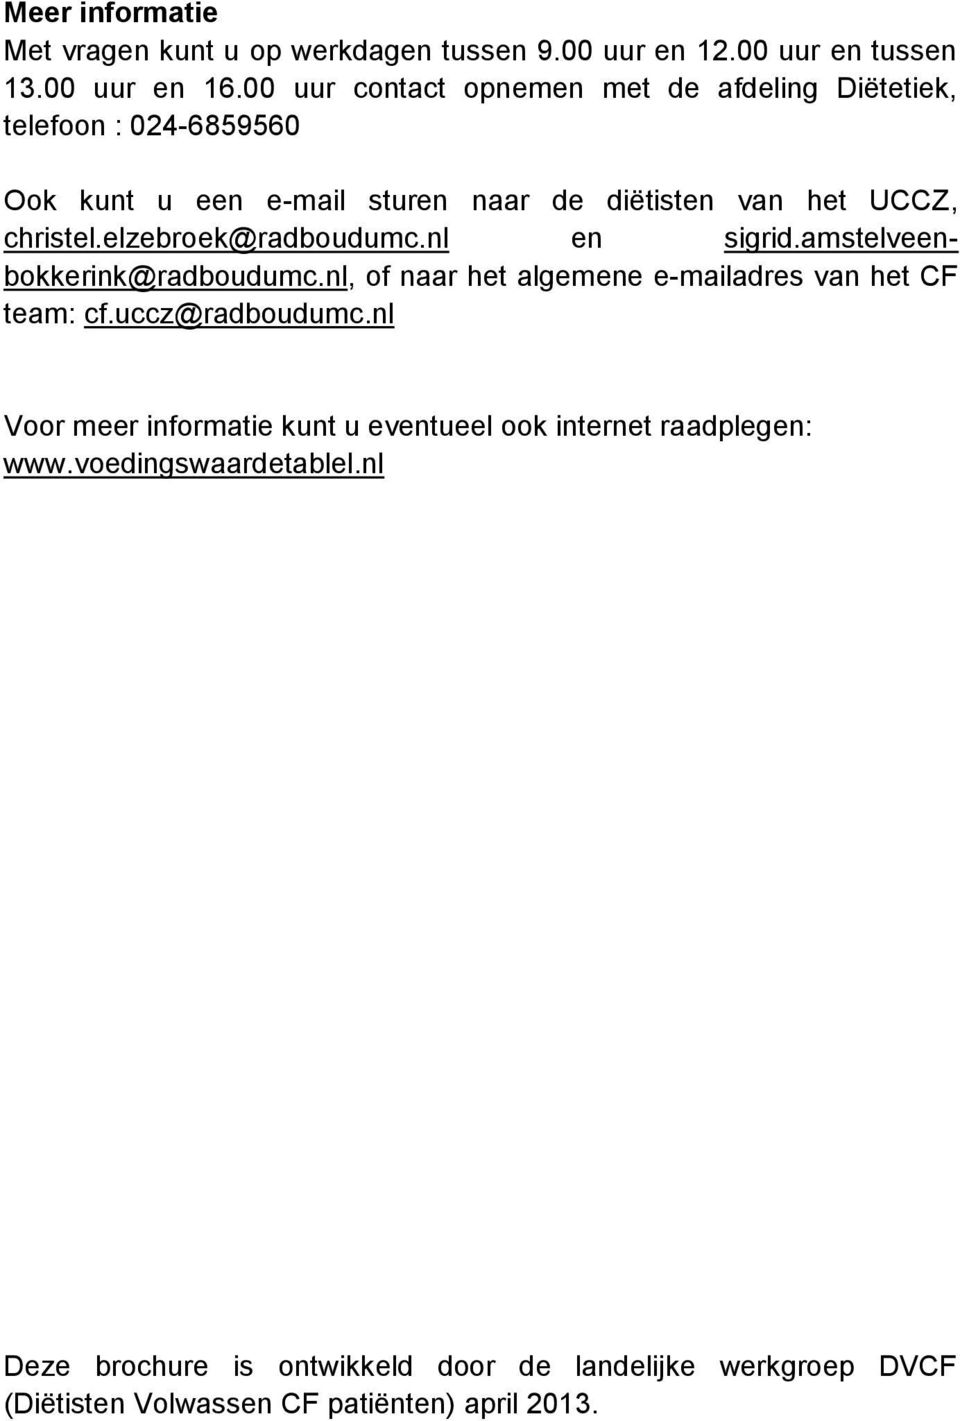 elzebroek@radboudumc.nl en sigrid.amstelveenbokkerink@radboudumc.nl, of naar het algemene e-mailadres van het CF team: cf.uccz@radboudumc.